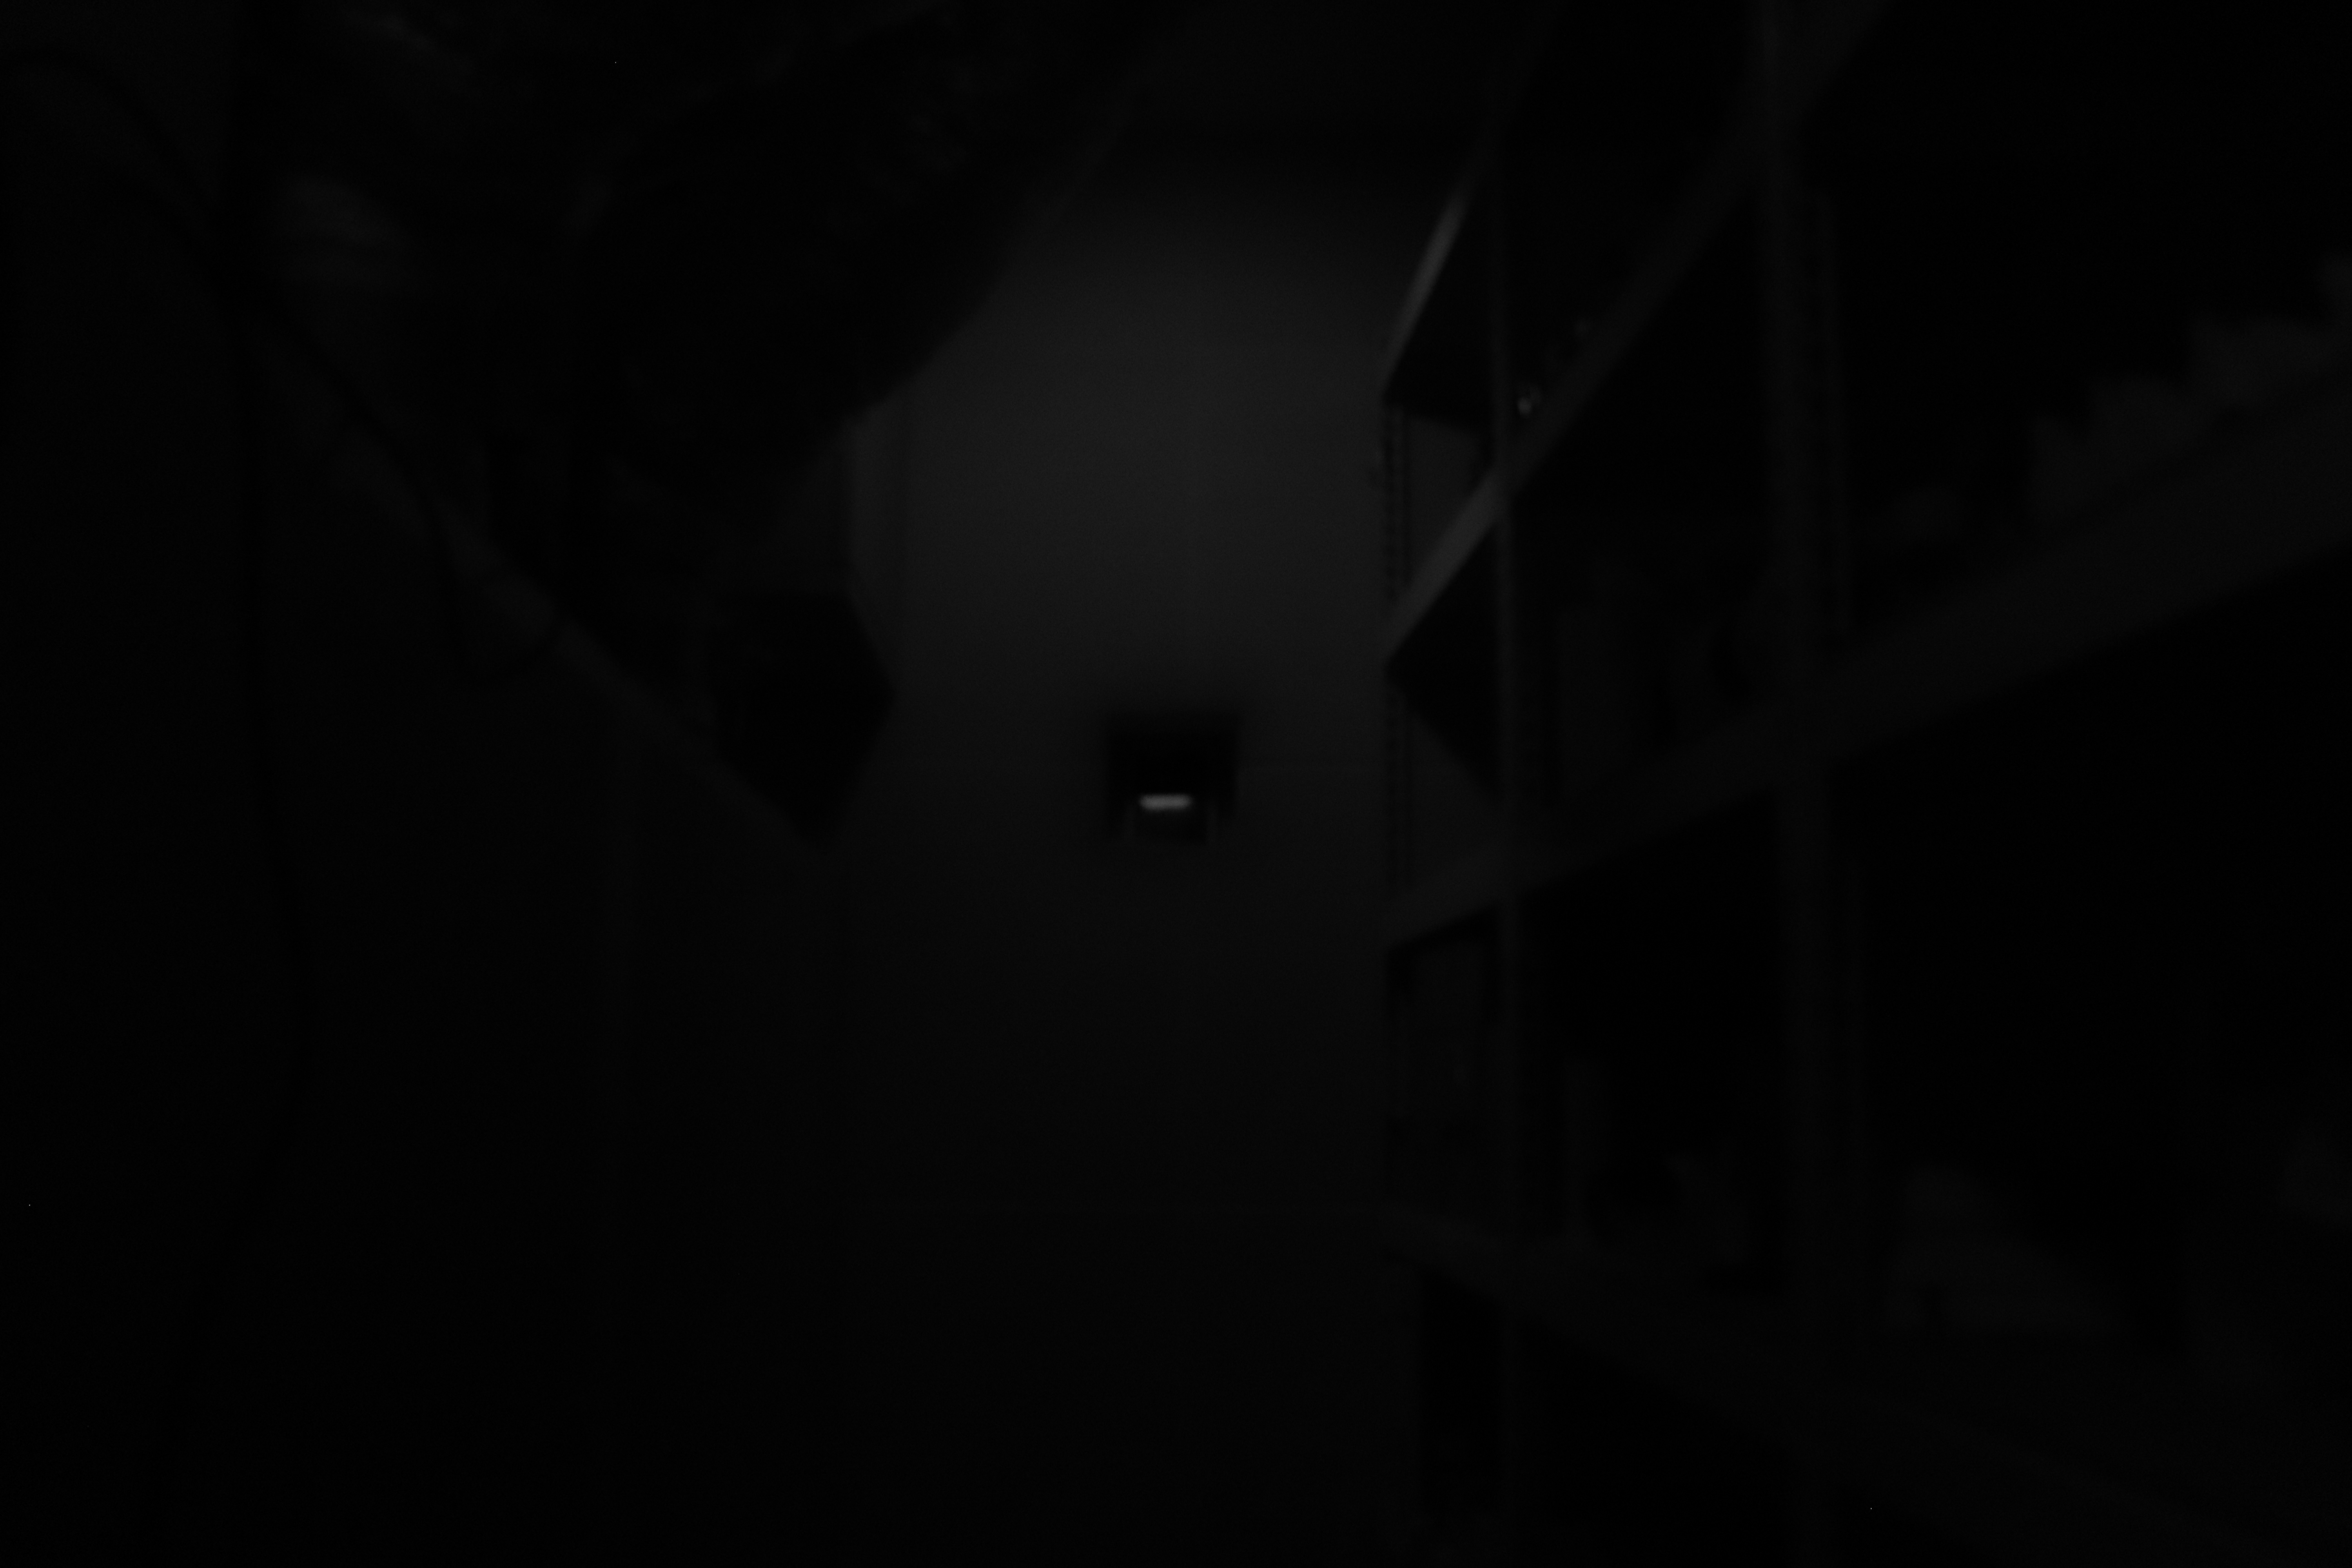 기계실 내부 구멍 속 사진 디스플레이 - 깊은쪽. 흑백사진.